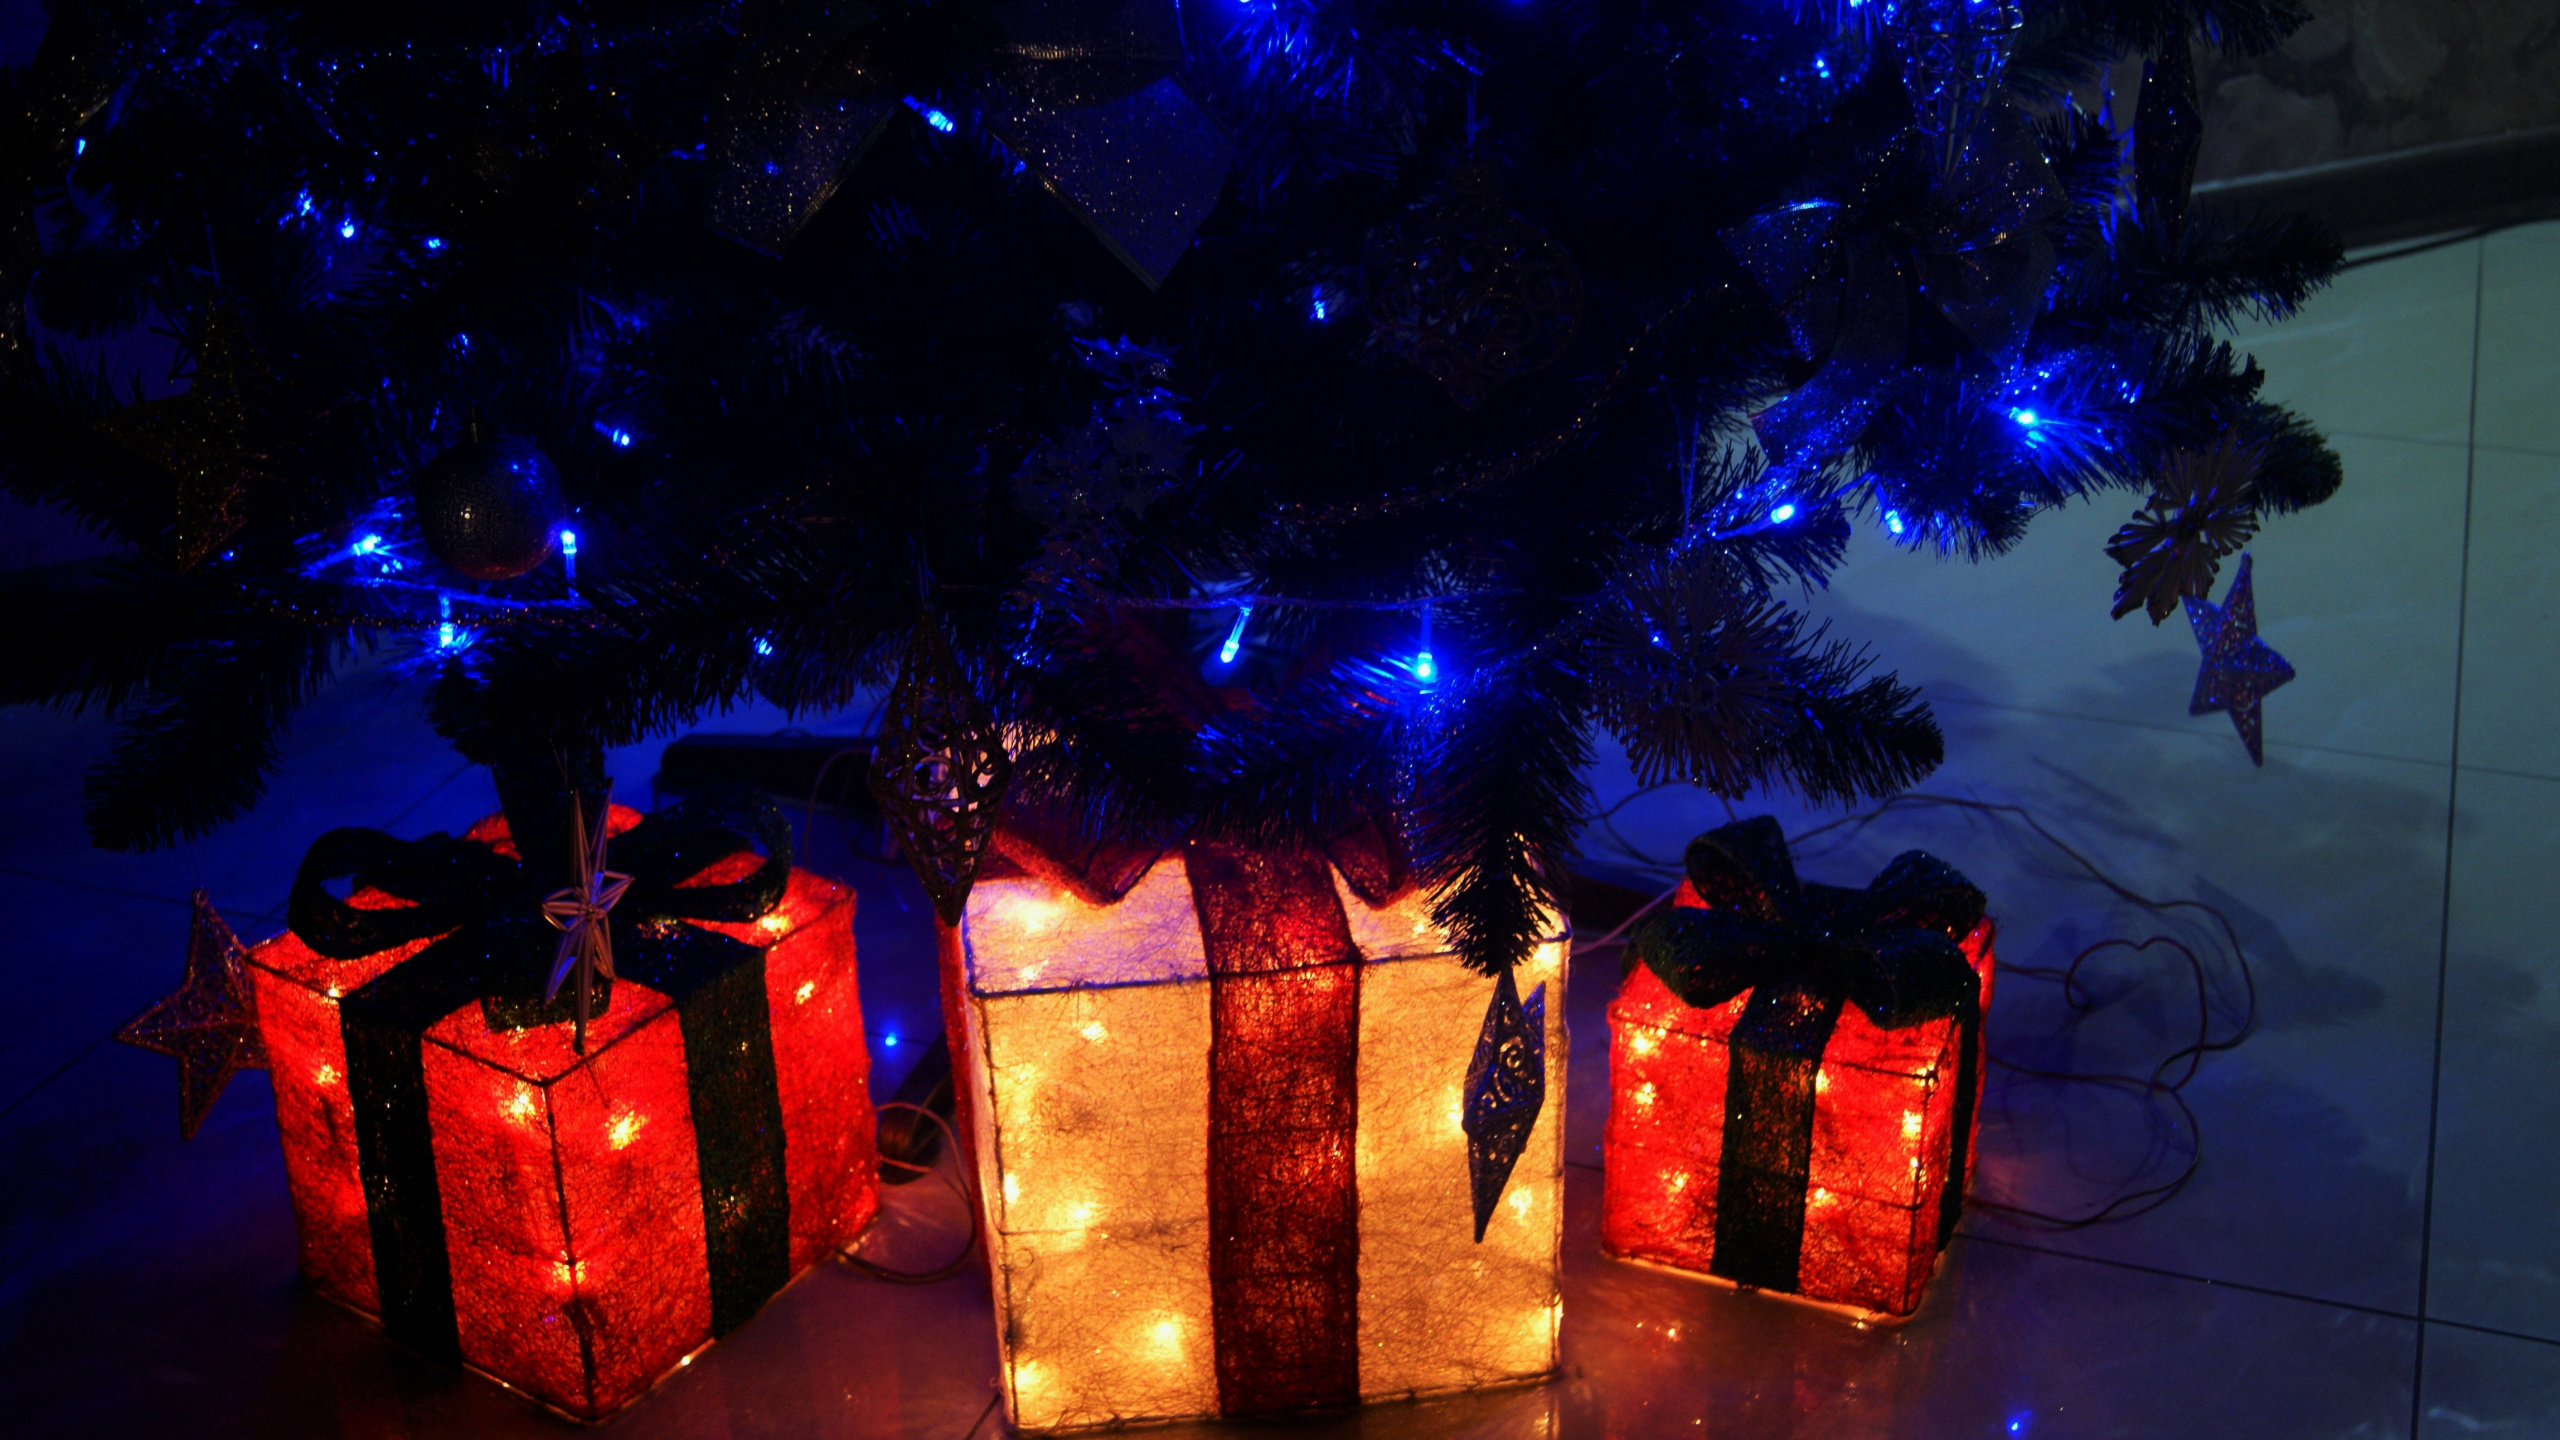 Licht, Weihnachtsbeleuchtung, Neujahr, Weihnachten, Neujahr Baum. Wallpaper in 2560x1440 Resolution